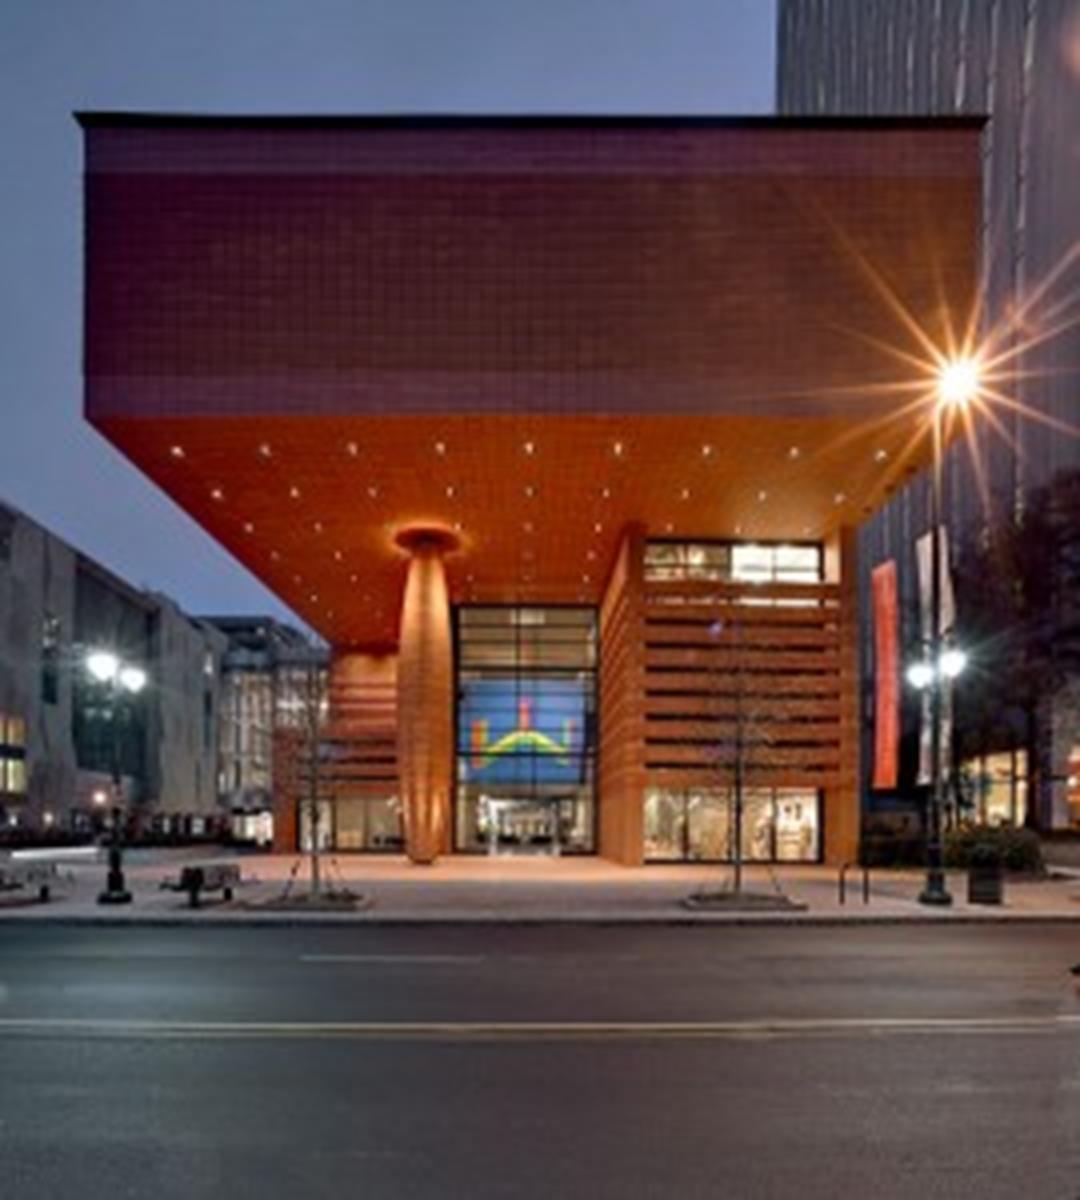 Bechtler Museum of Modern Art